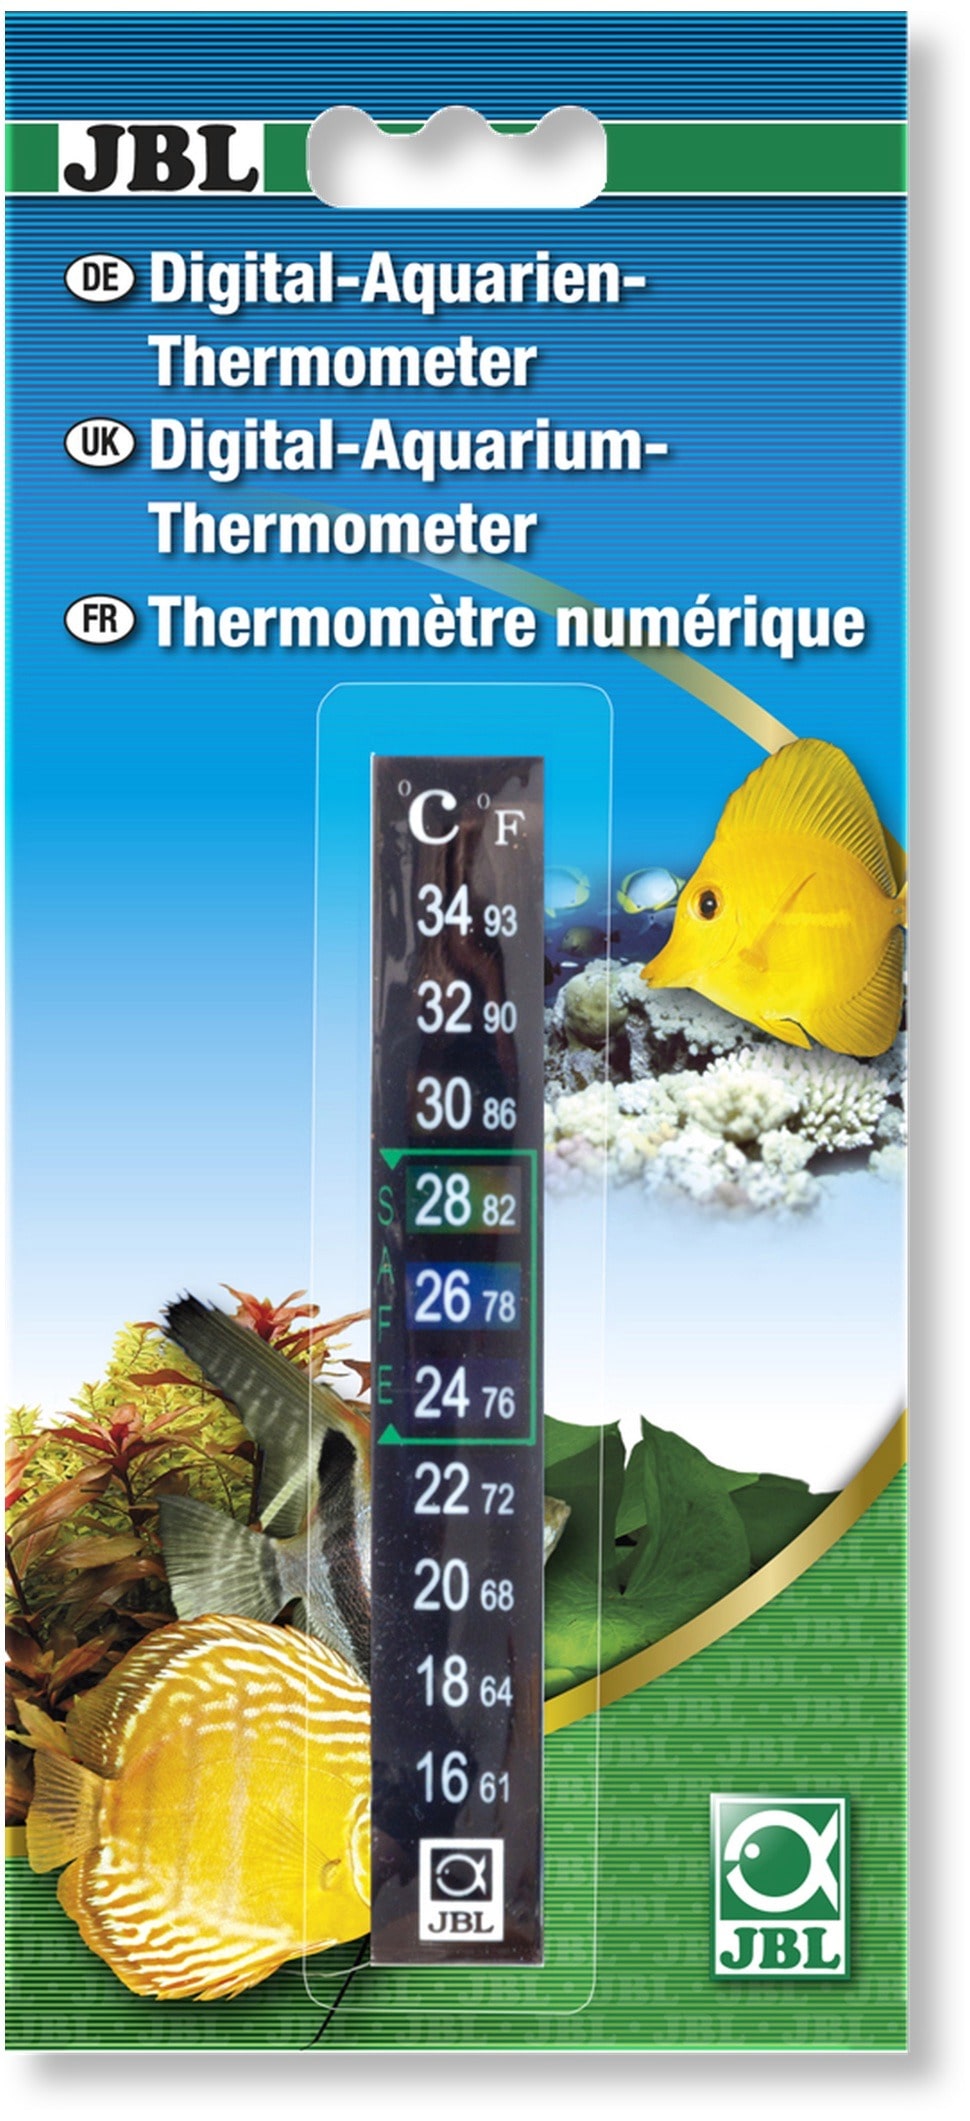 JBL Thermomètre digital adhésif de précision. Mesure de température allant de 20 à 34°C